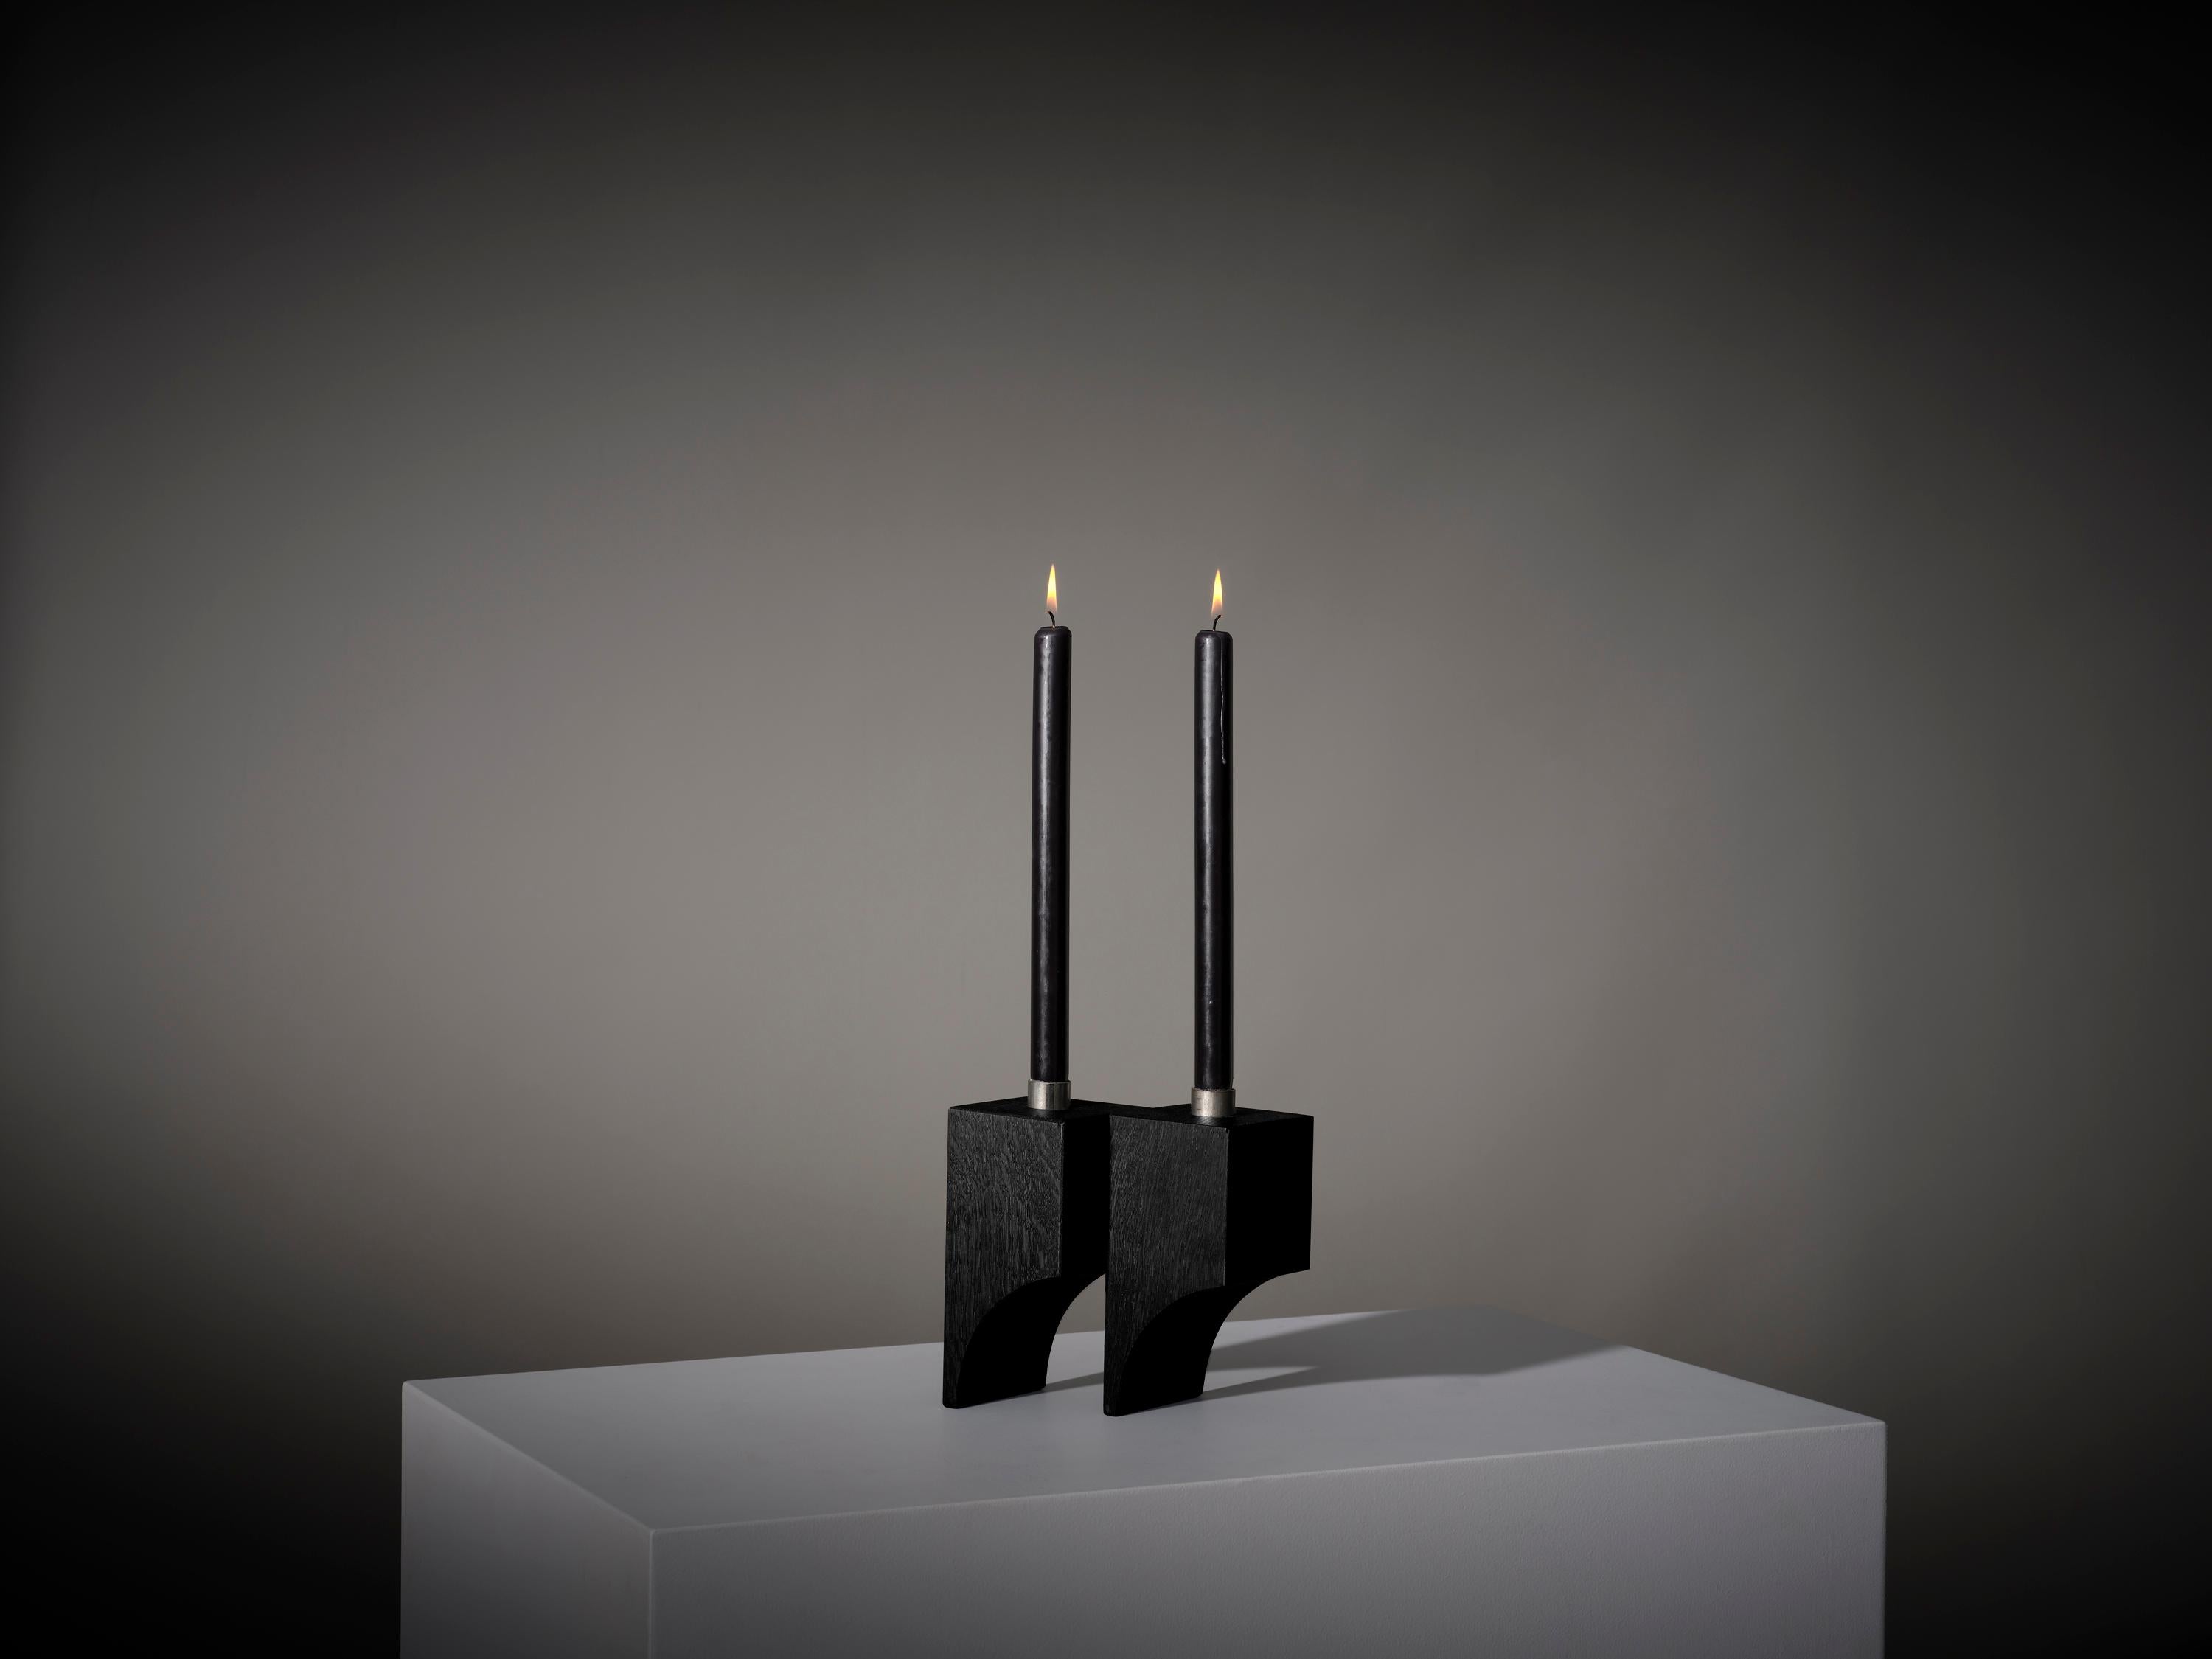 Der vom Surrealismus inspirierte Acer-Kerzenhalter R:2 zeichnet sich durch architektonische kubische Volumen und halb gewölbte Hohlräume aus. Entworfen von Aad Bos und handgefertigt in Amsterdam aus massivem Eichenholz und Stahl. 

Mokko ist ein in